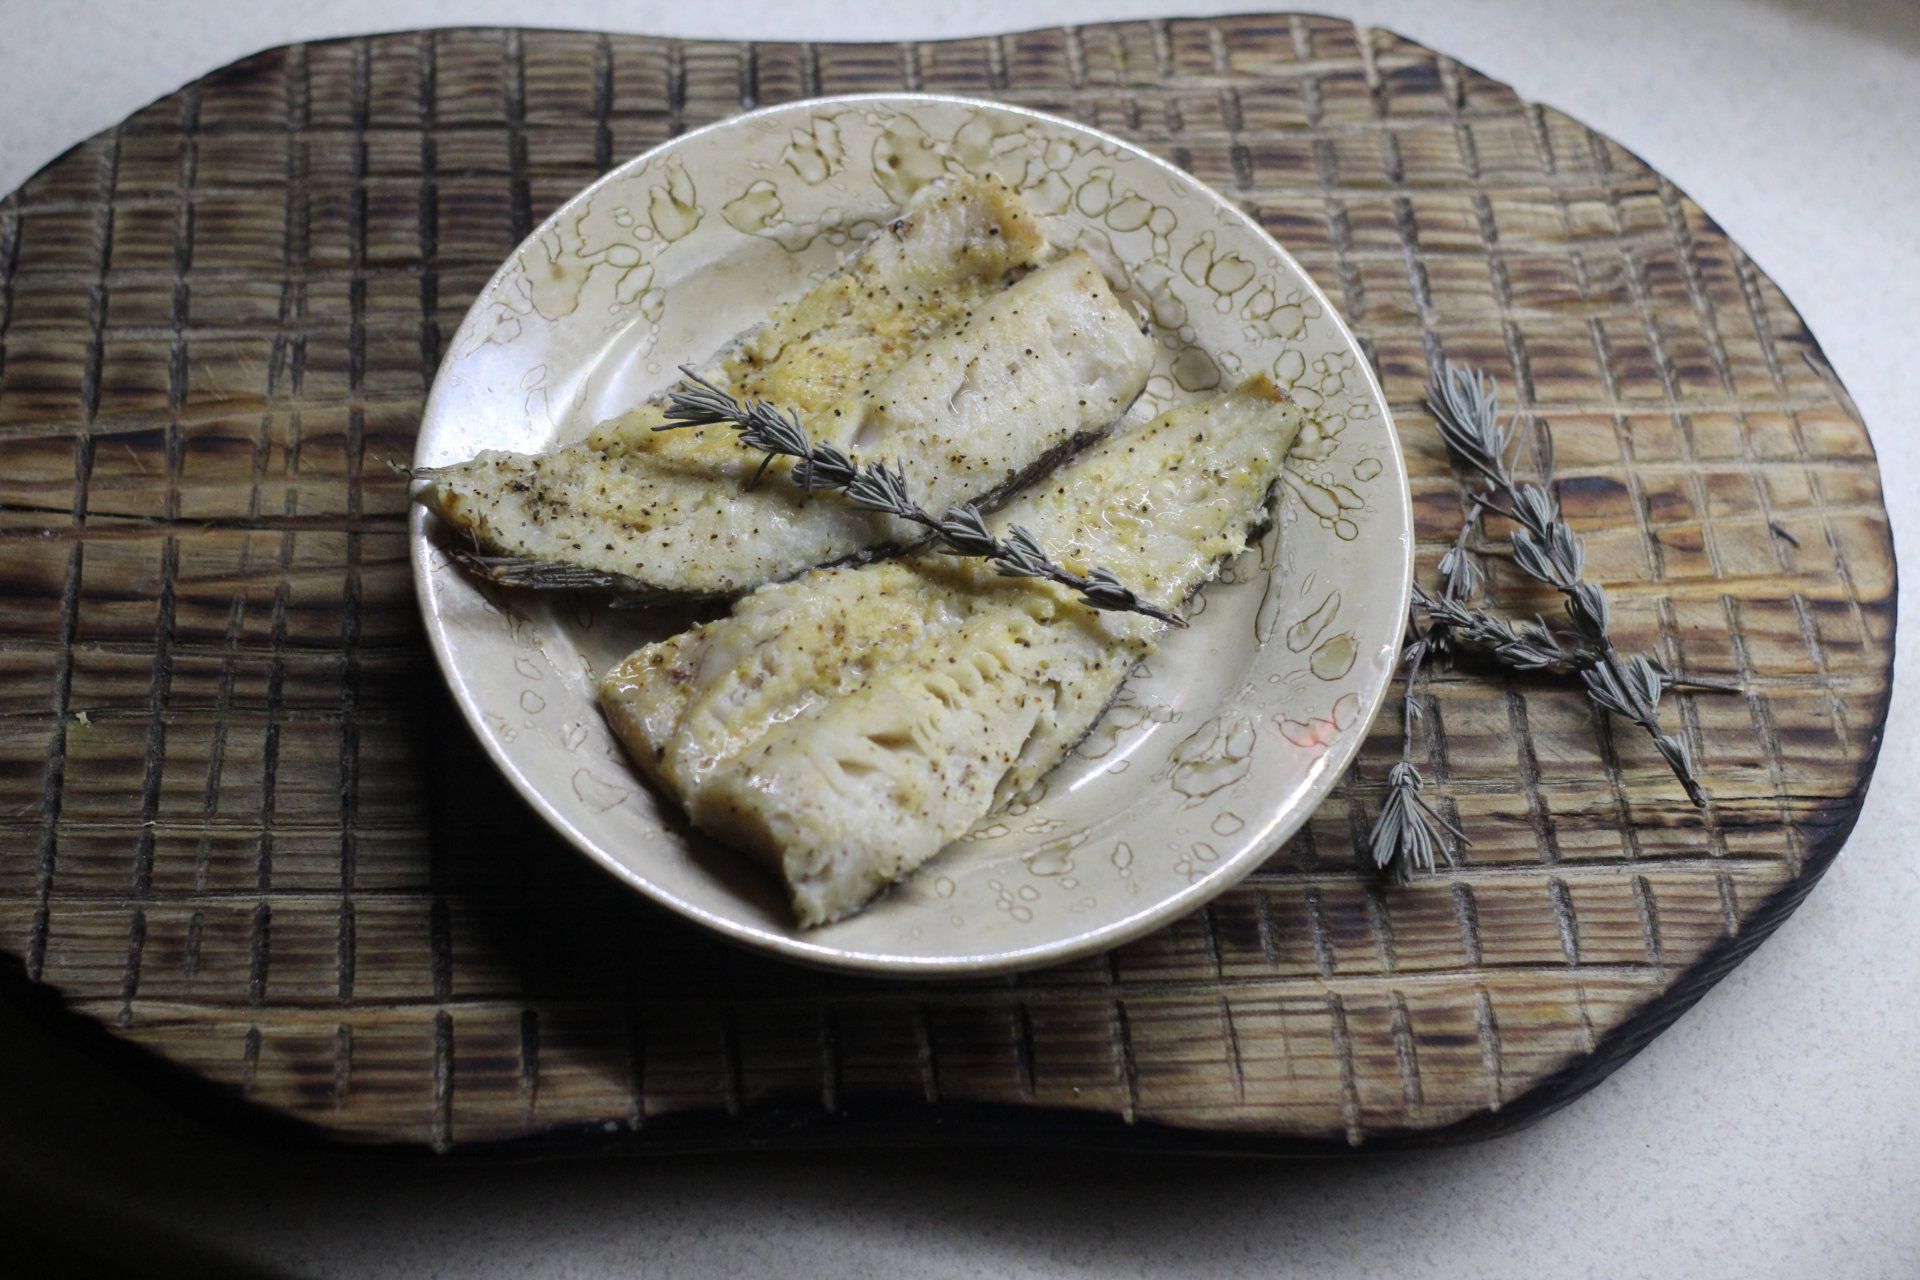 Готовим сочную рыбу минтай в духовке и на сковороде: 7 лучших рецептов